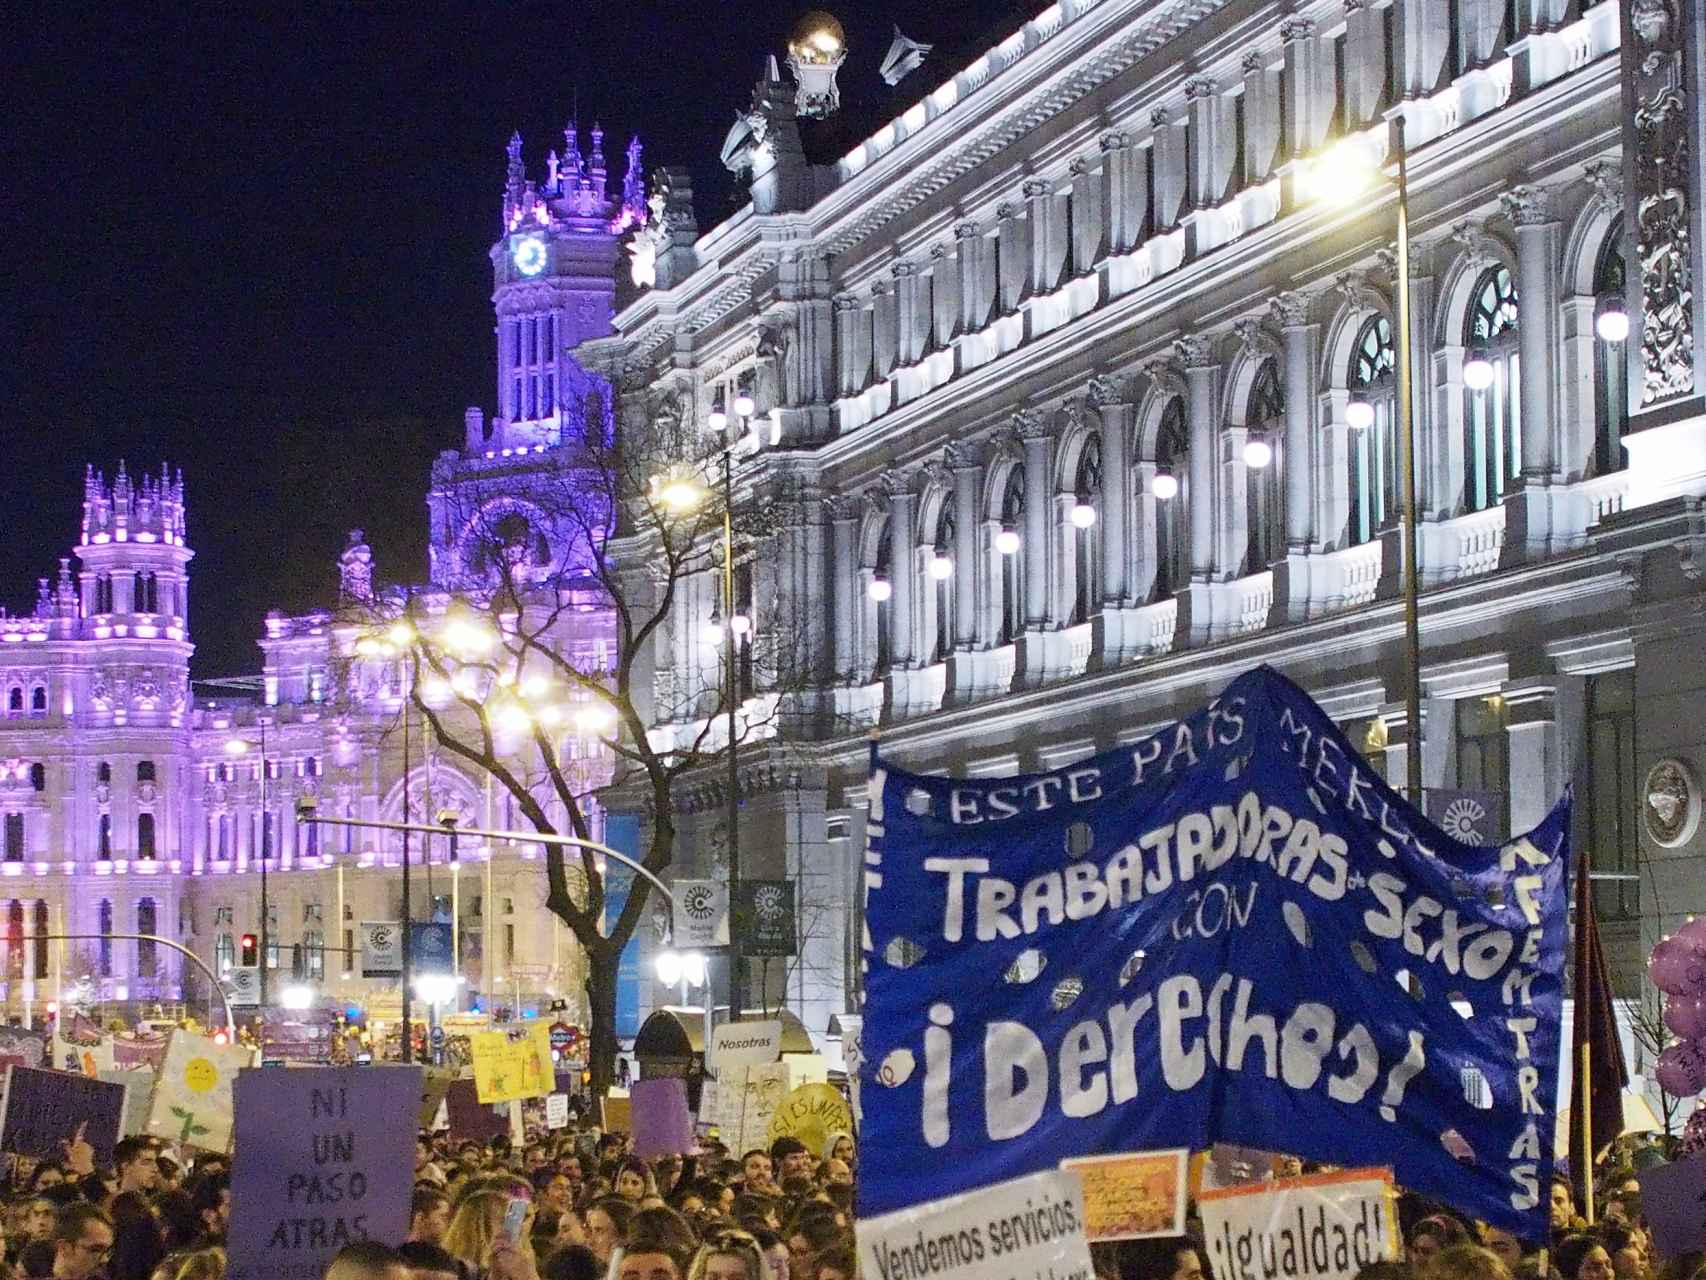 Prostitutas en Madrid pidiendo más derechos laborales